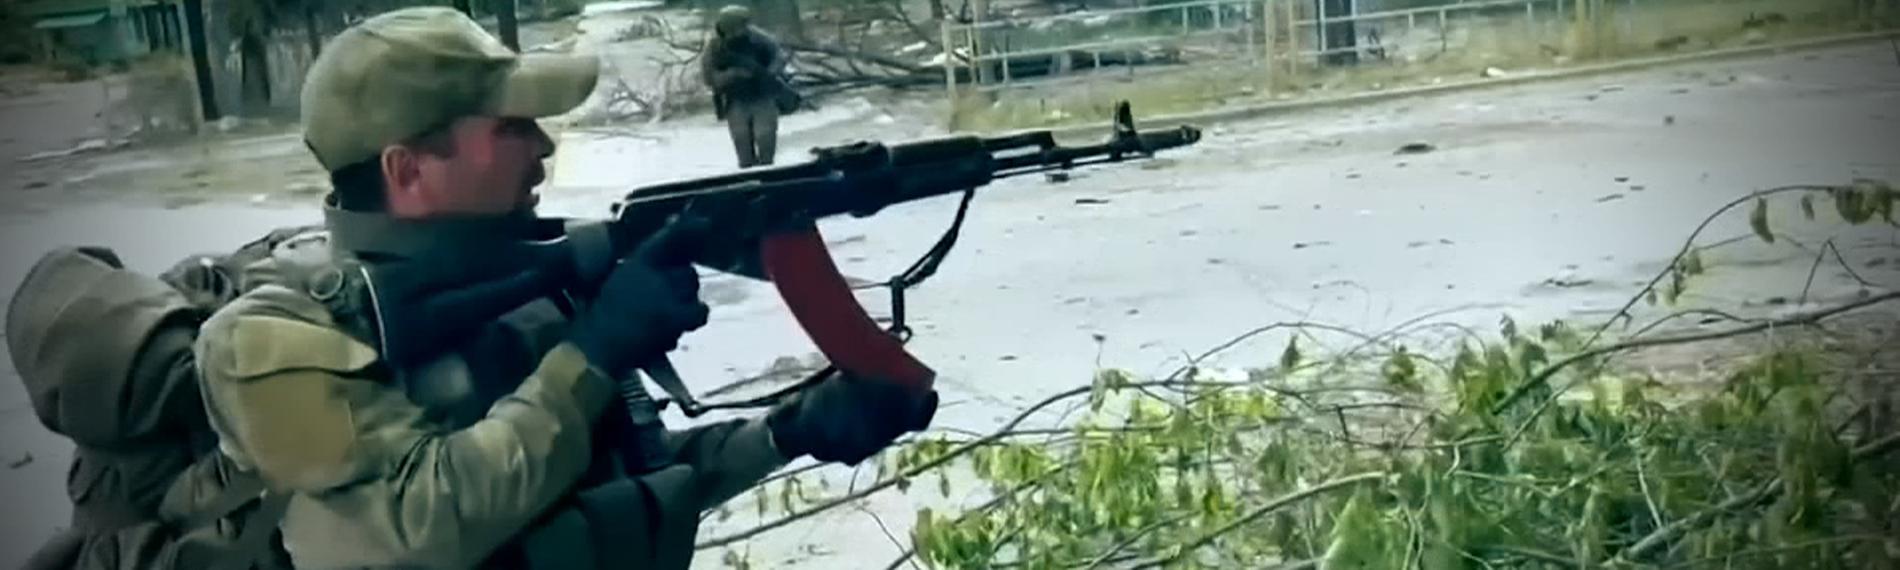 Soldat schießt mit einer Kalashnikov